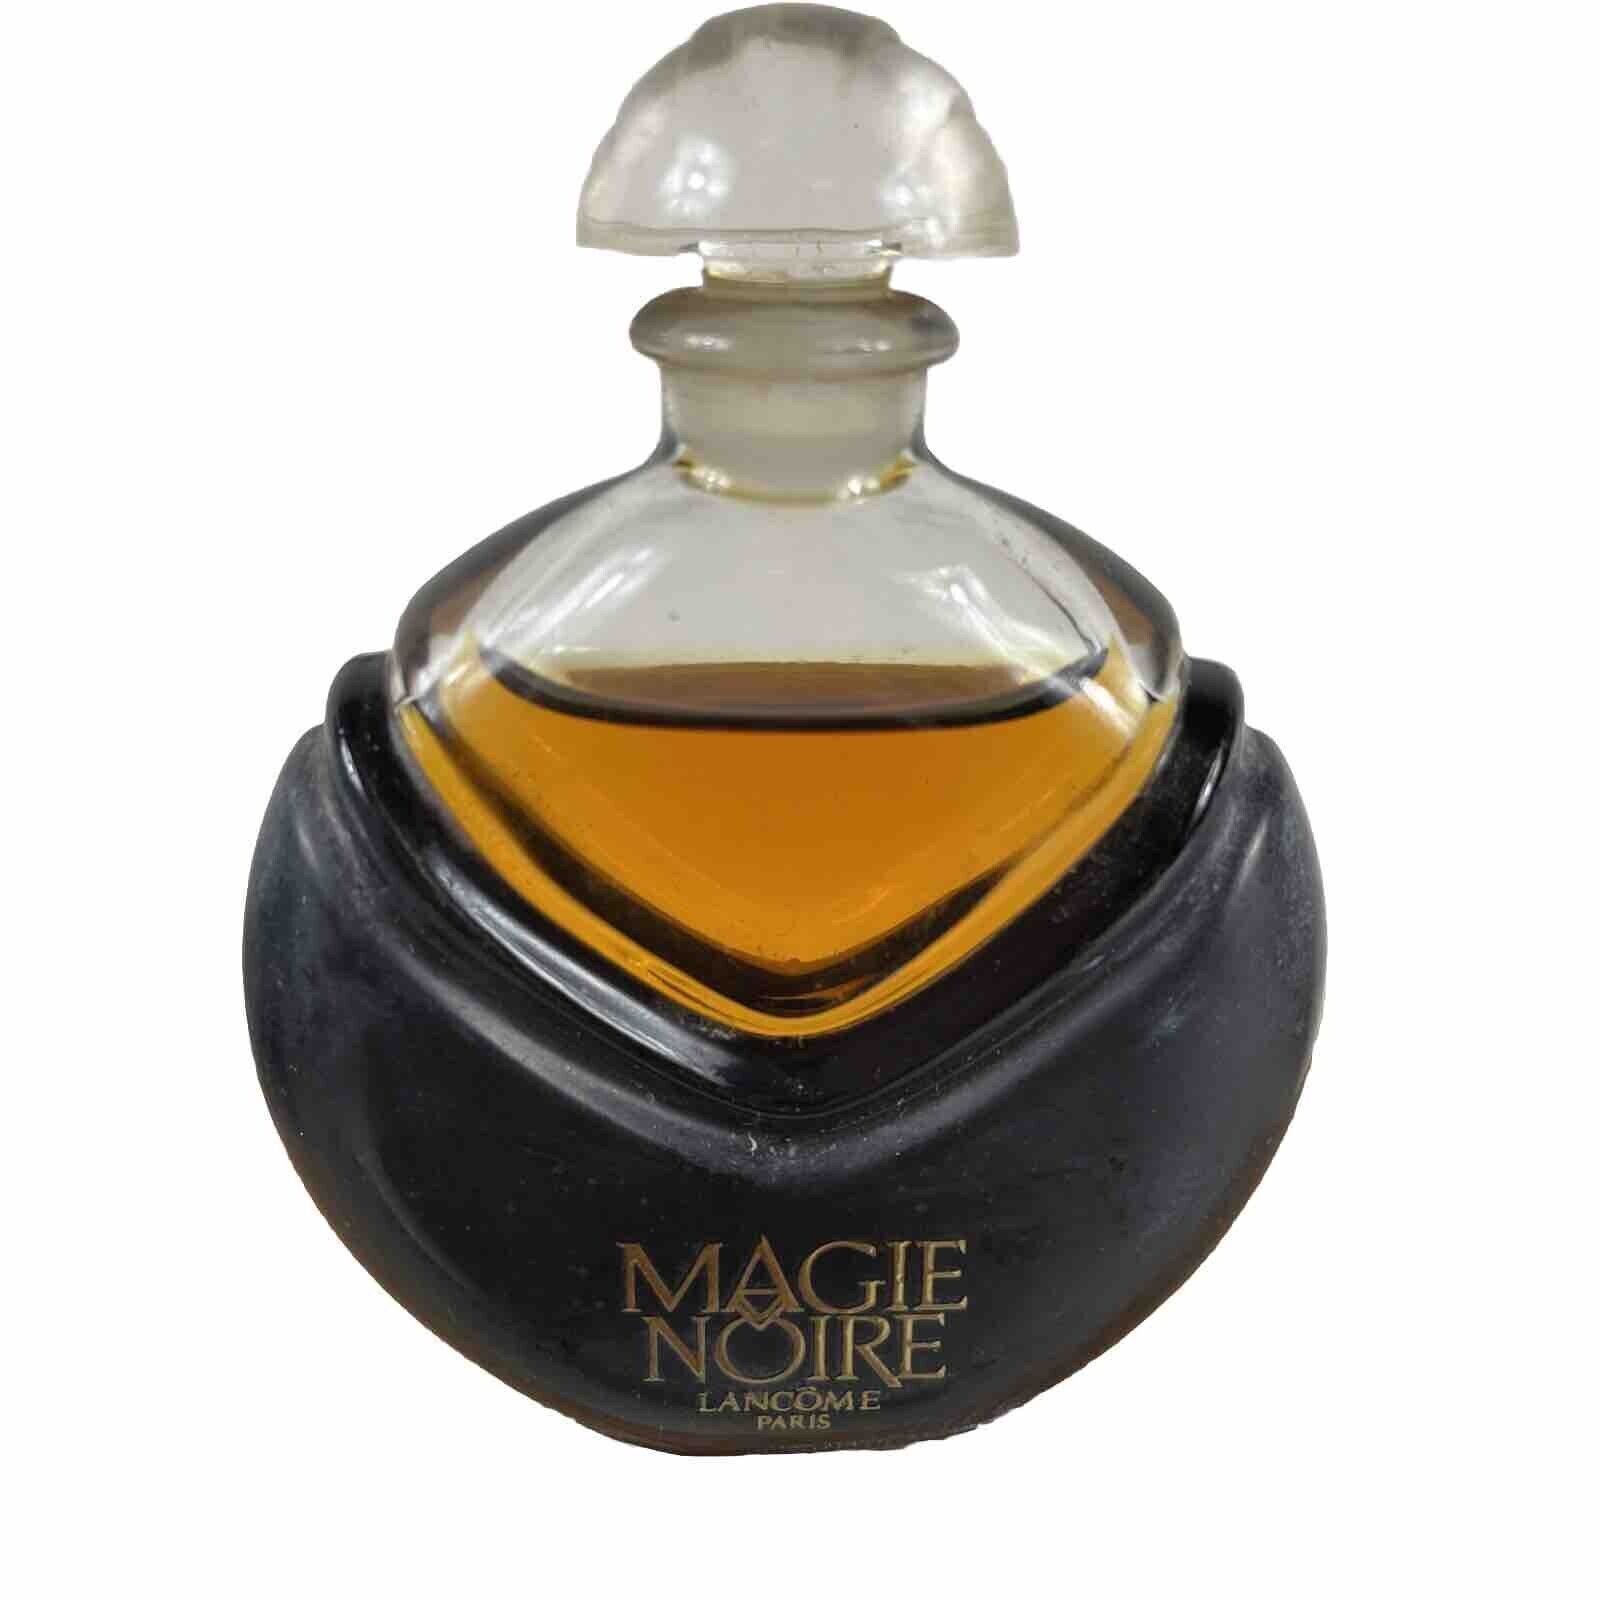 Magie Noire by Lancôme 1978 Vintage Parfum Extrait 1/4oz Full Perfume Fragrance